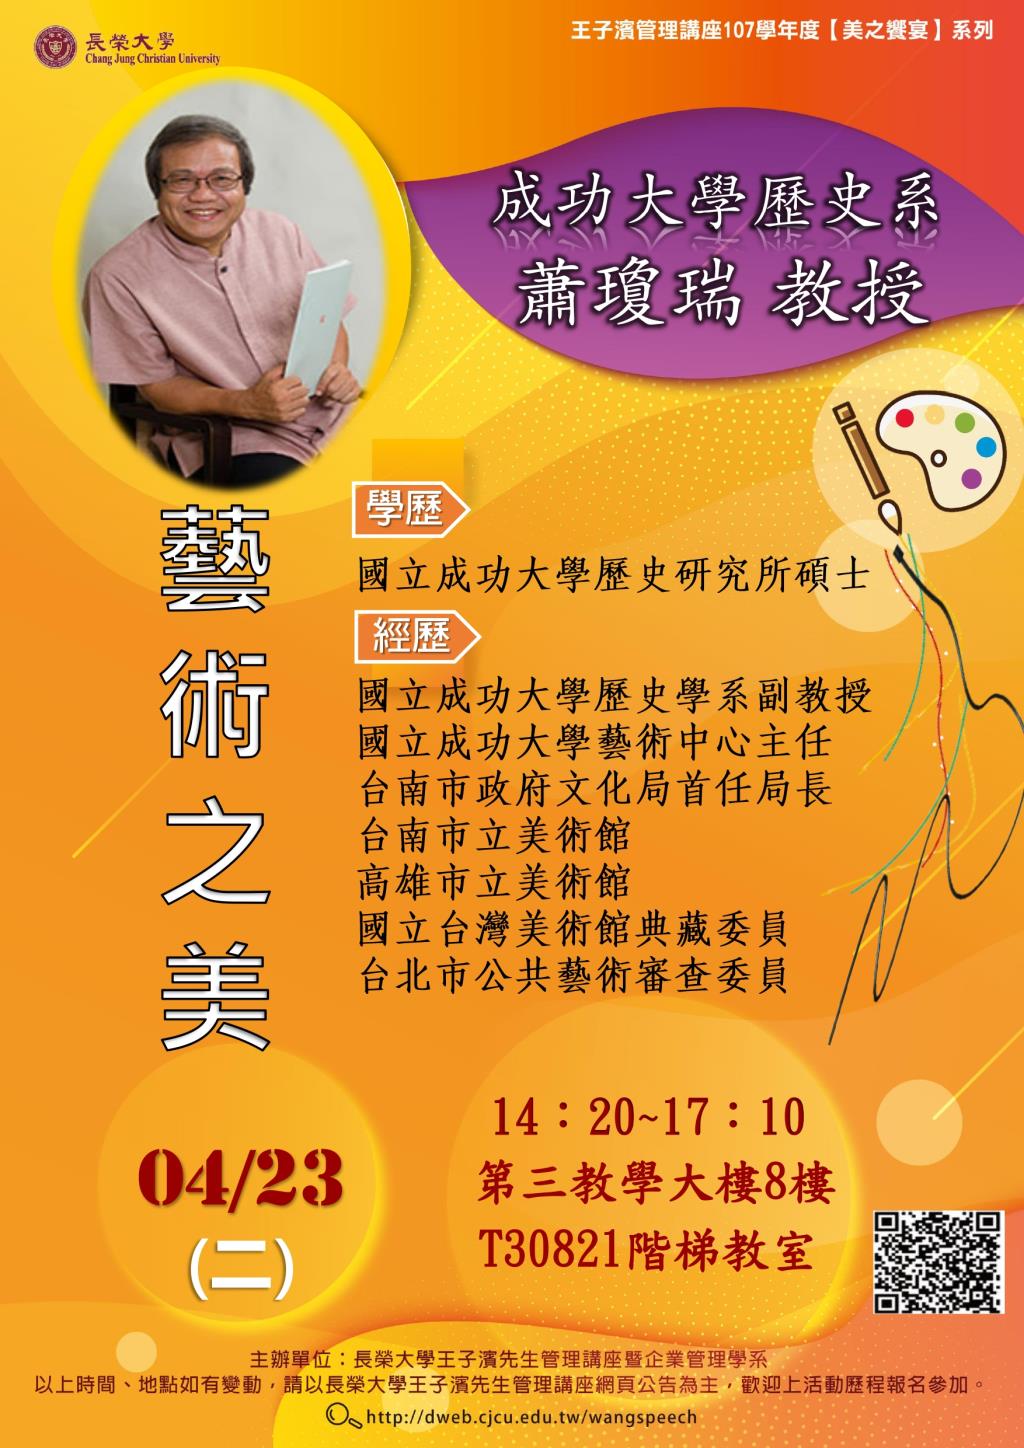 敬邀參加本週二下午(04/23)王子濱先生管理講座---成功大學歷史系 蕭瓊瑞教授